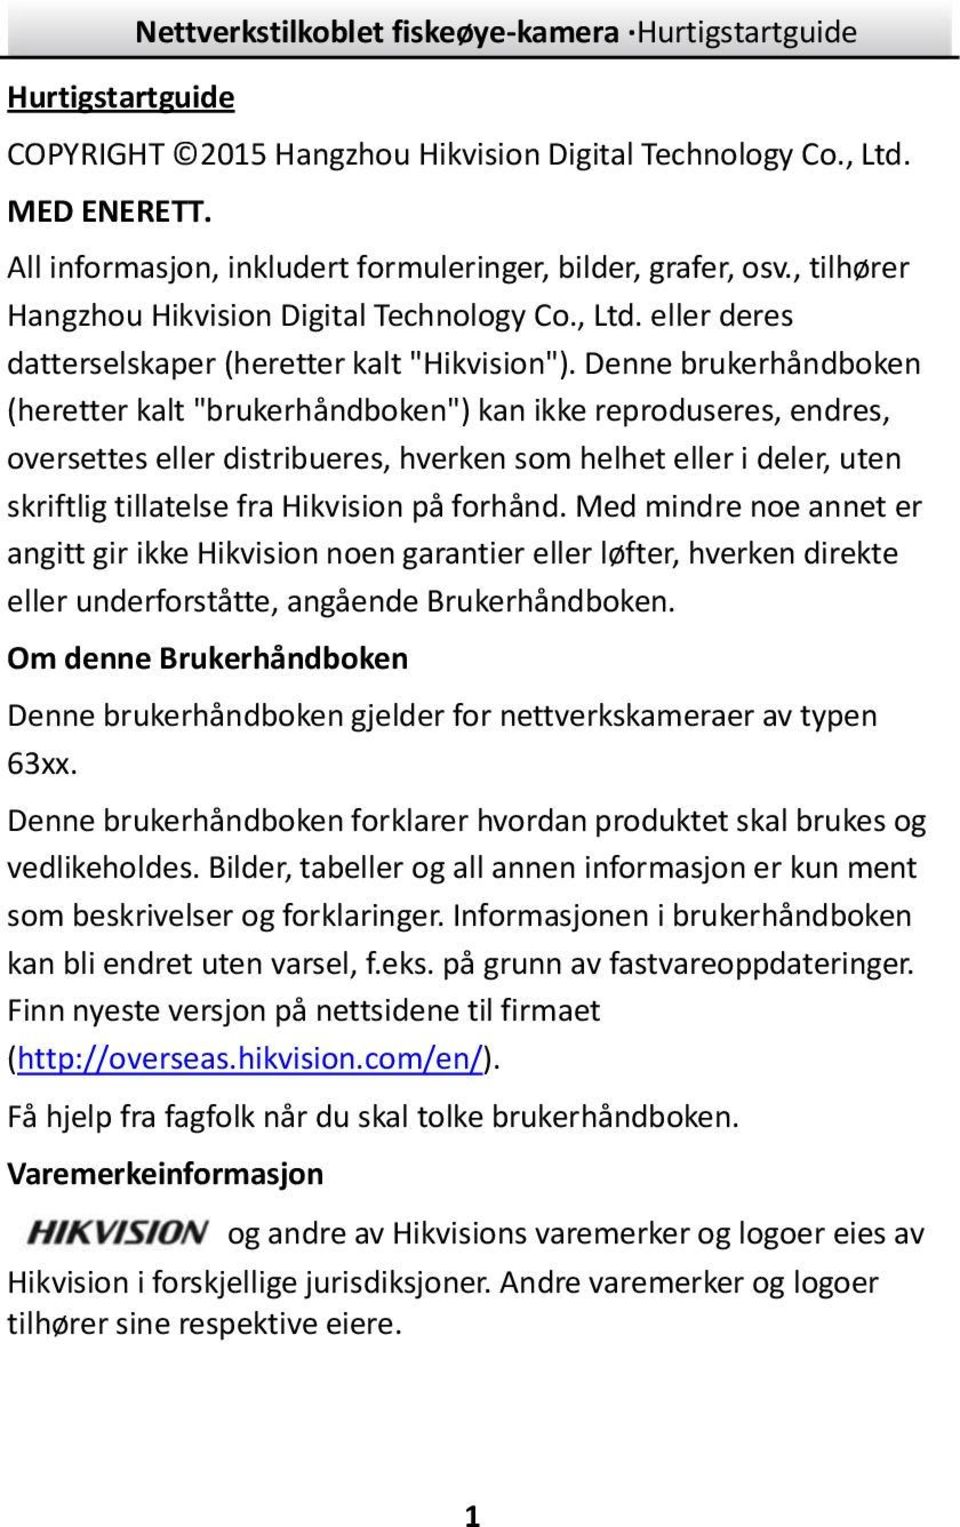 Denne brukerhåndboken (heretter kalt "brukerhåndboken") kan ikke reproduseres, endres, oversettes eller distribueres, hverken som helhet eller i deler, uten skriftlig tillatelse fra Hikvision på